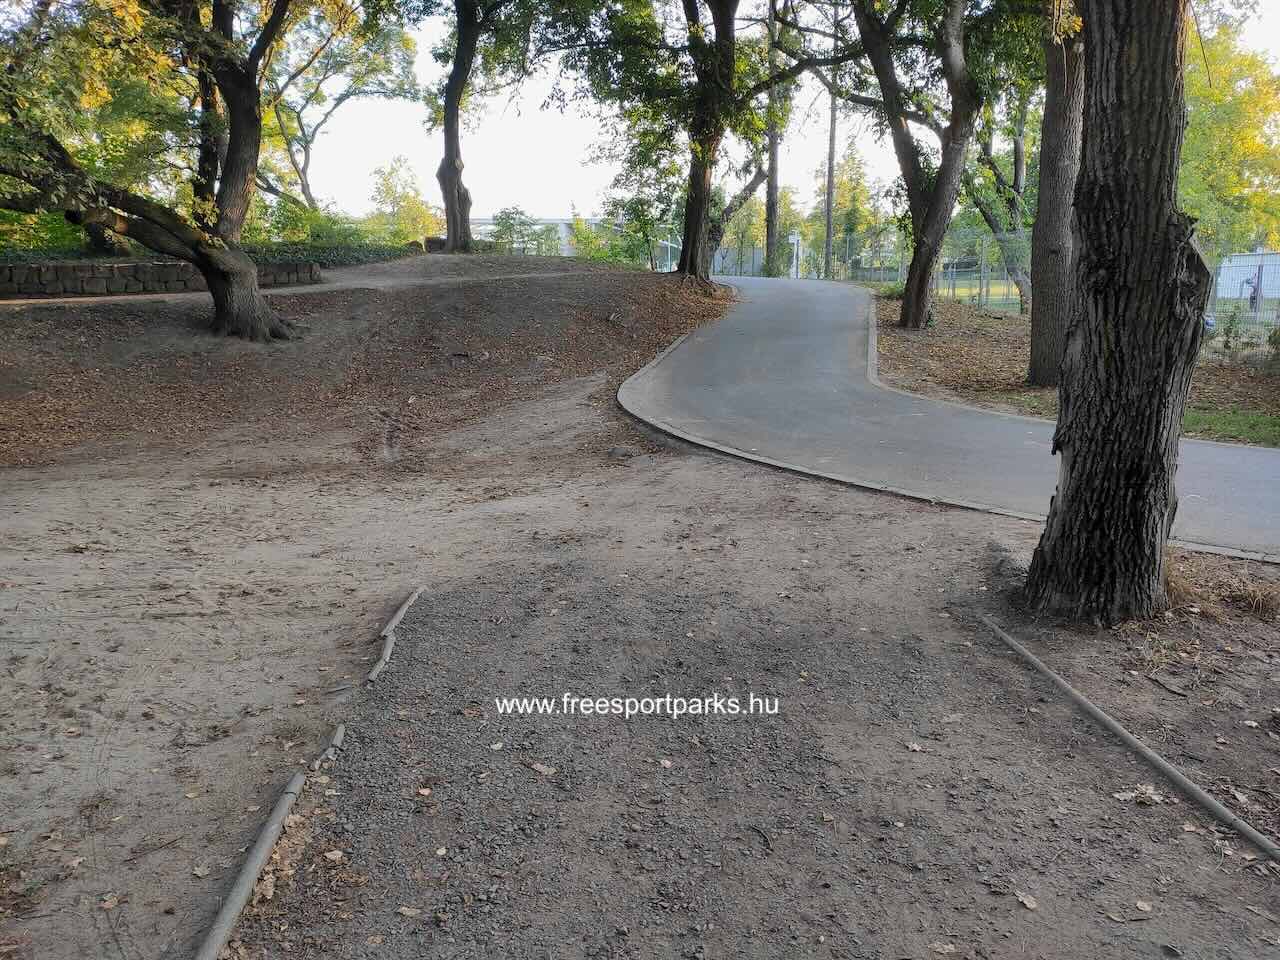 Nordic Walking földútja aszfaltra vált, Nagyerdei park, Debrecen - Free Sport Parks Térkép